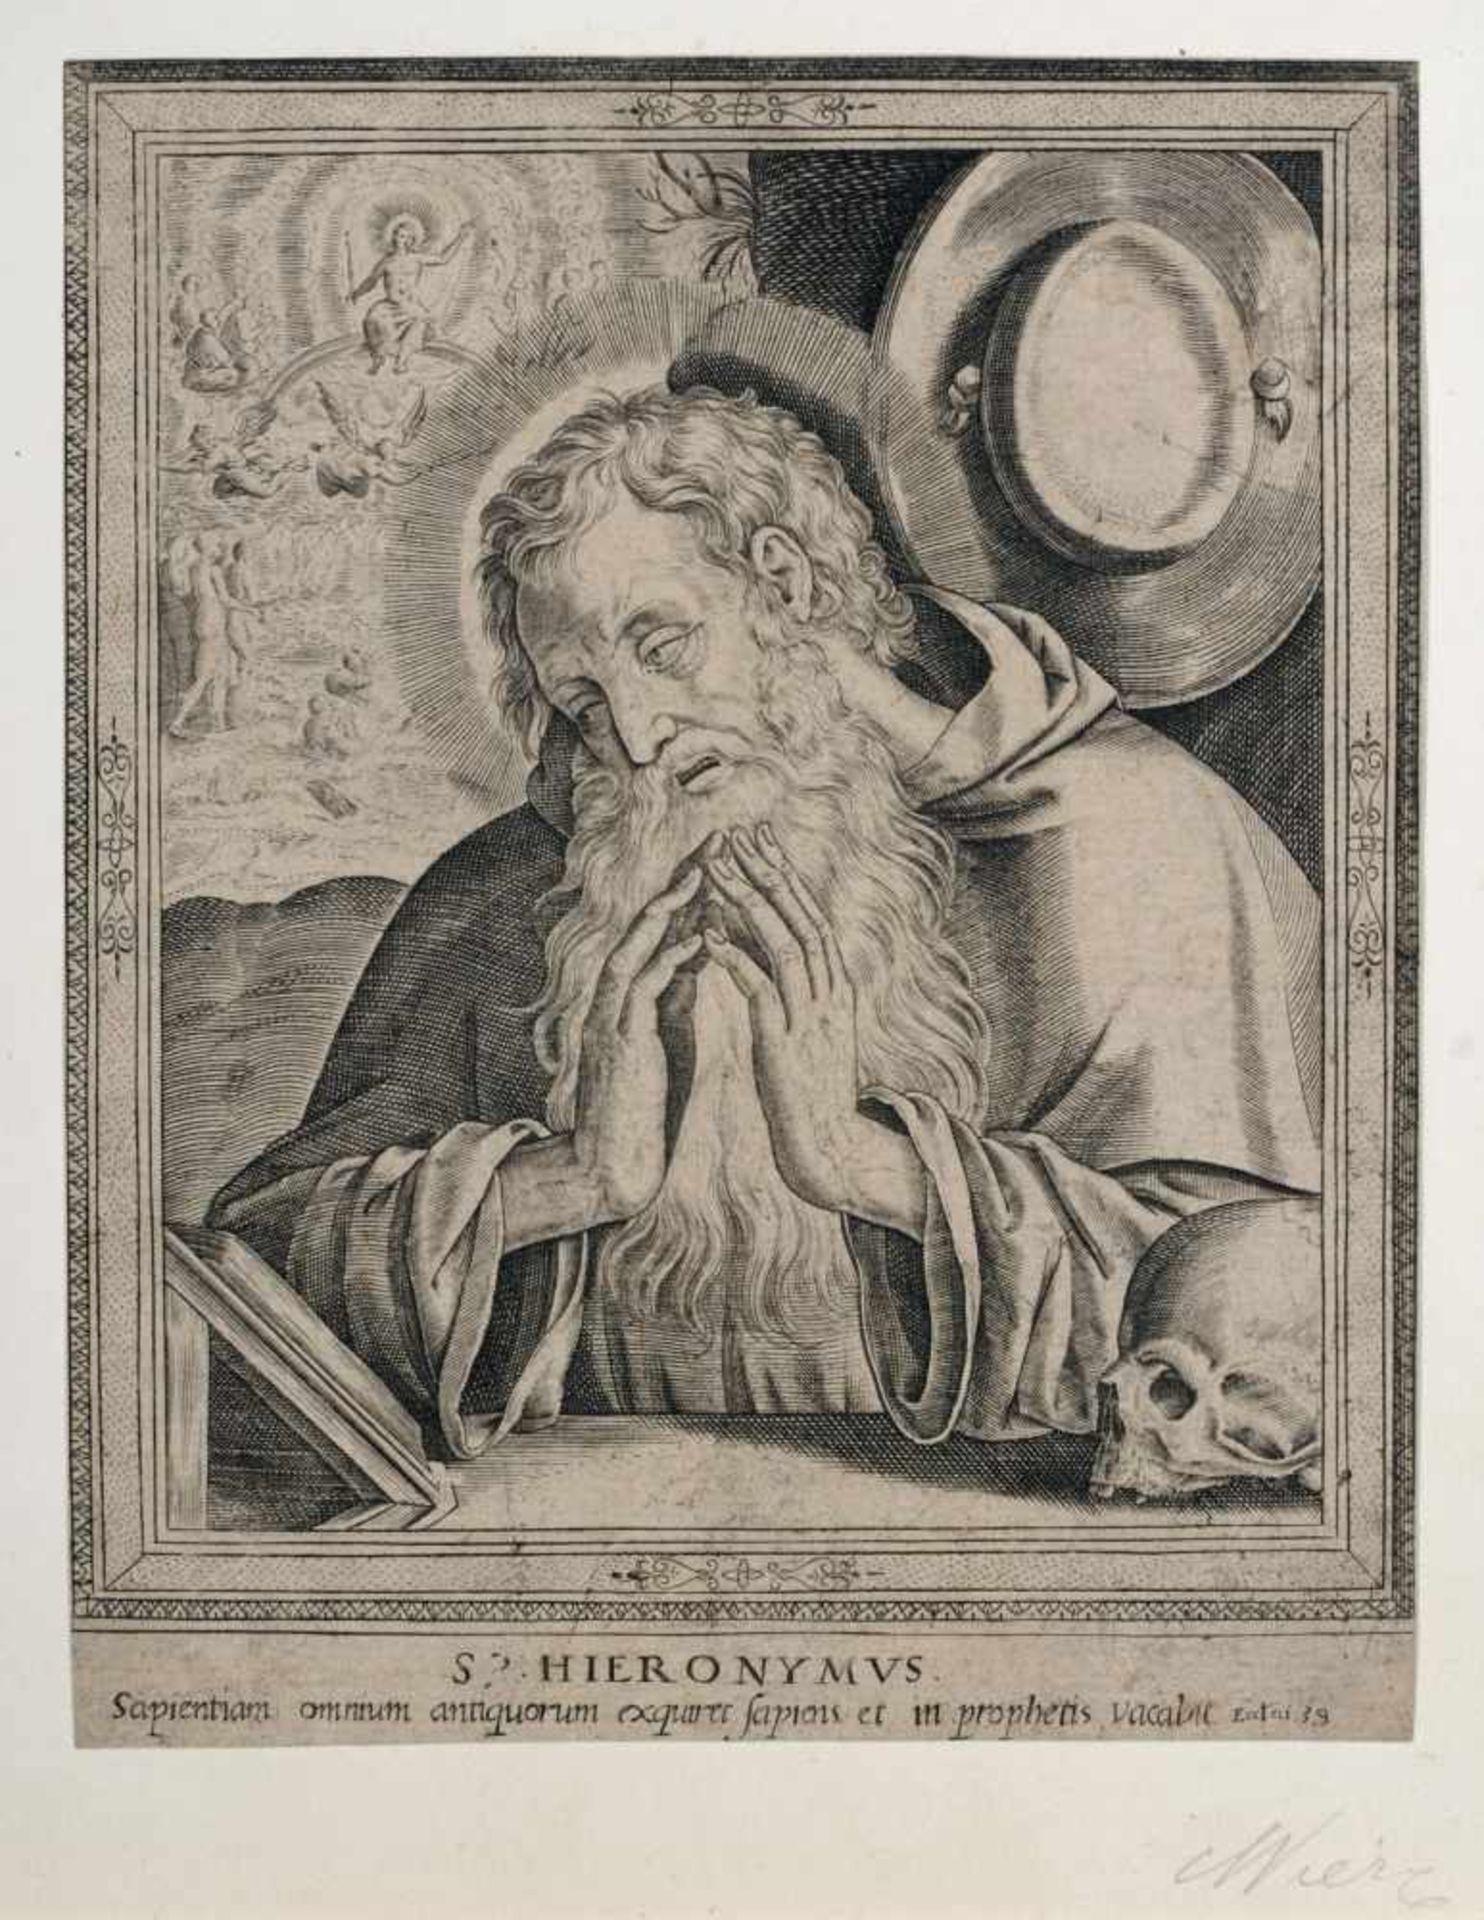 Hieronymus Wierix "Helige Hieronymus". Vor 1610.